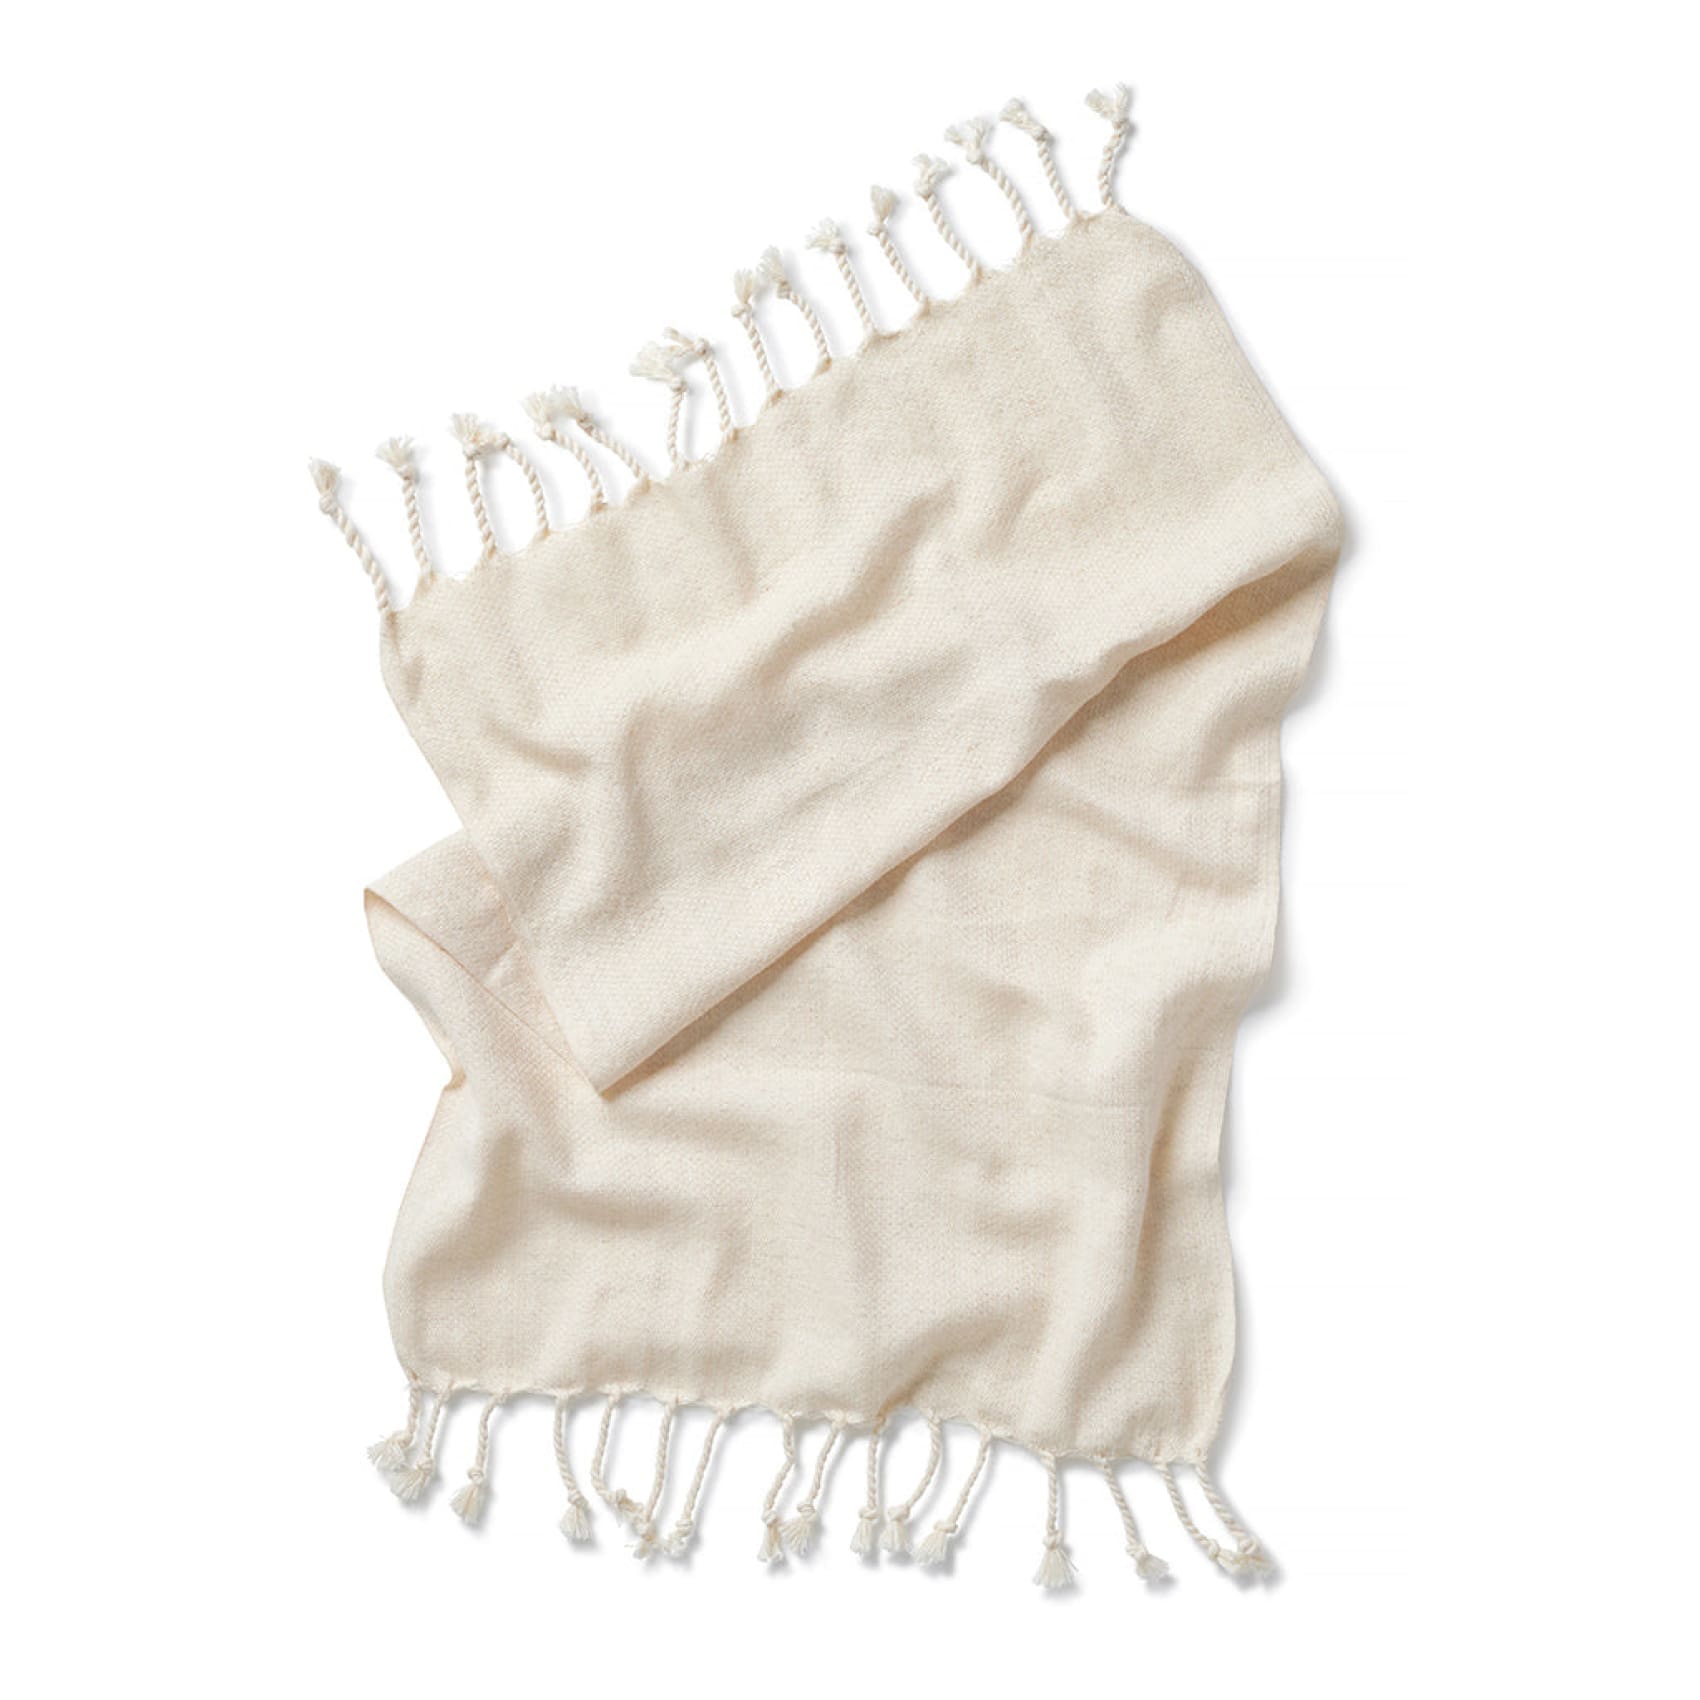 terazi-cotton-napkins-box-of-6-chalk-luks-linen-linens-fashion-accessory-852.jpg